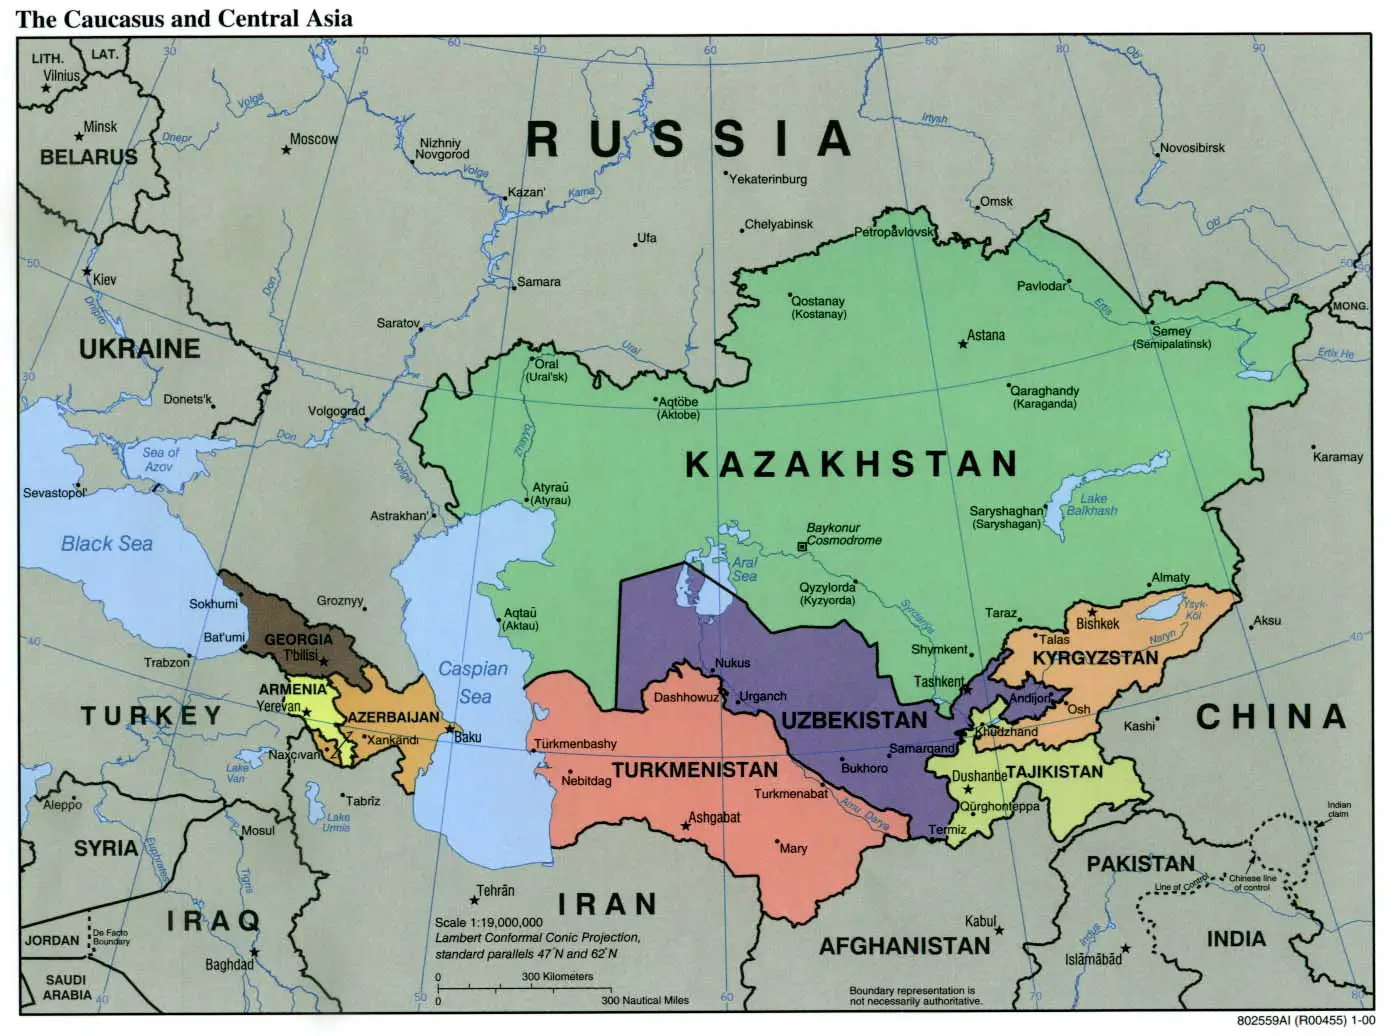 Caucasus Central Asia Political Map 2000 1